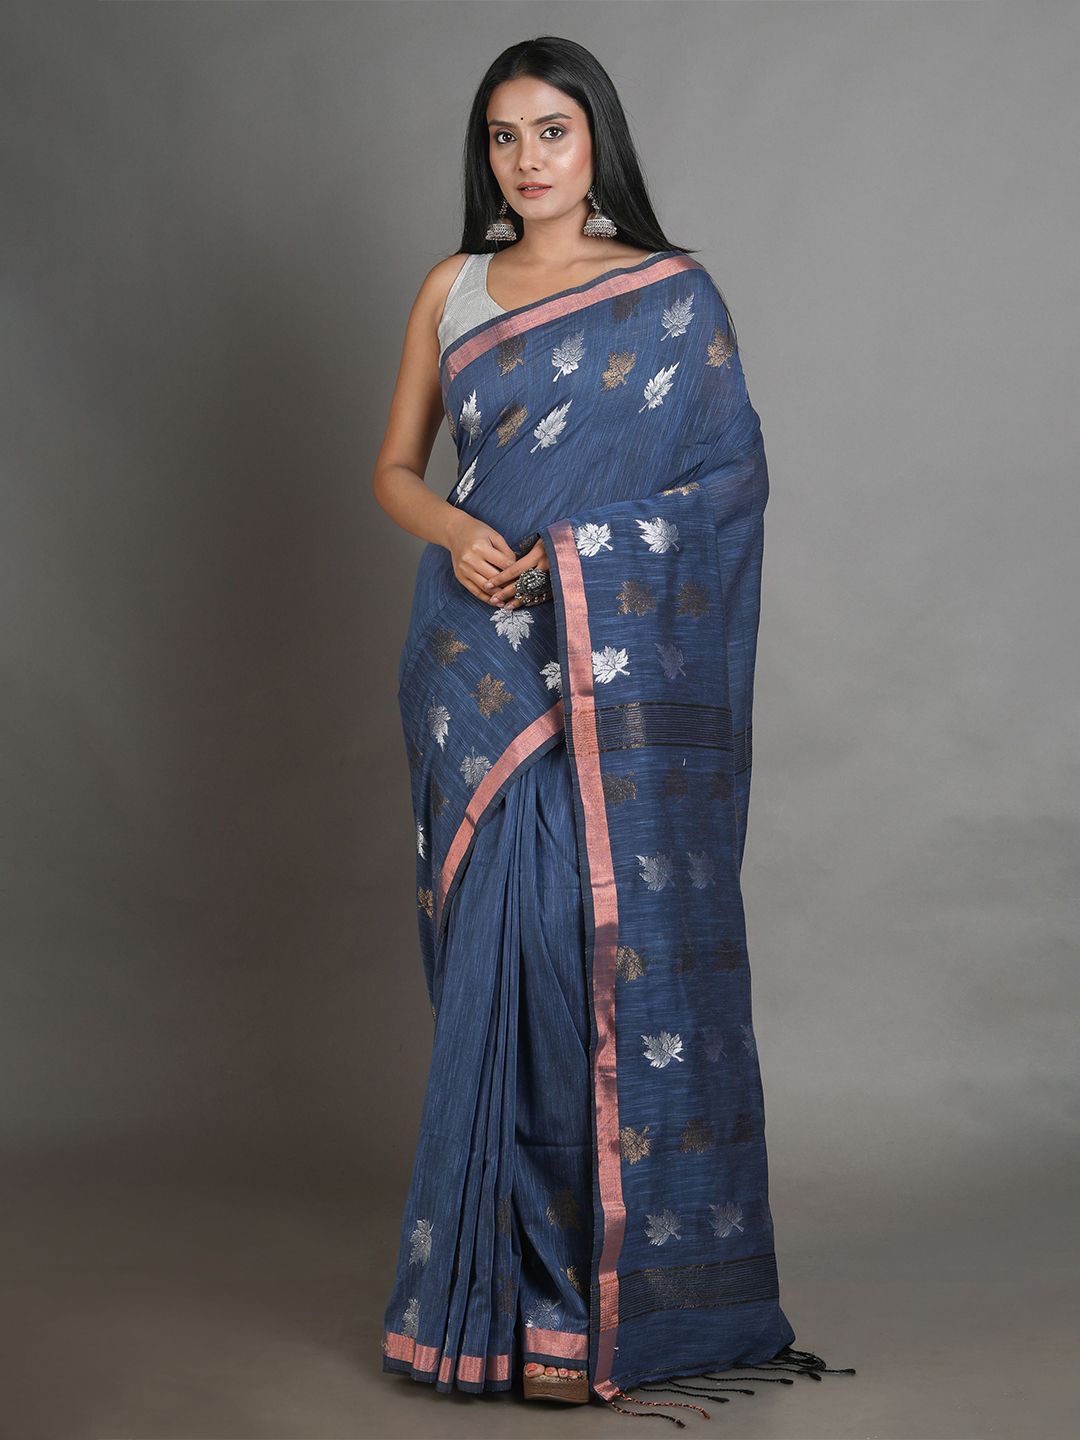 Arhi Teal & Silver-Toned Woven Design Zari Pure Linen Saree Price in India